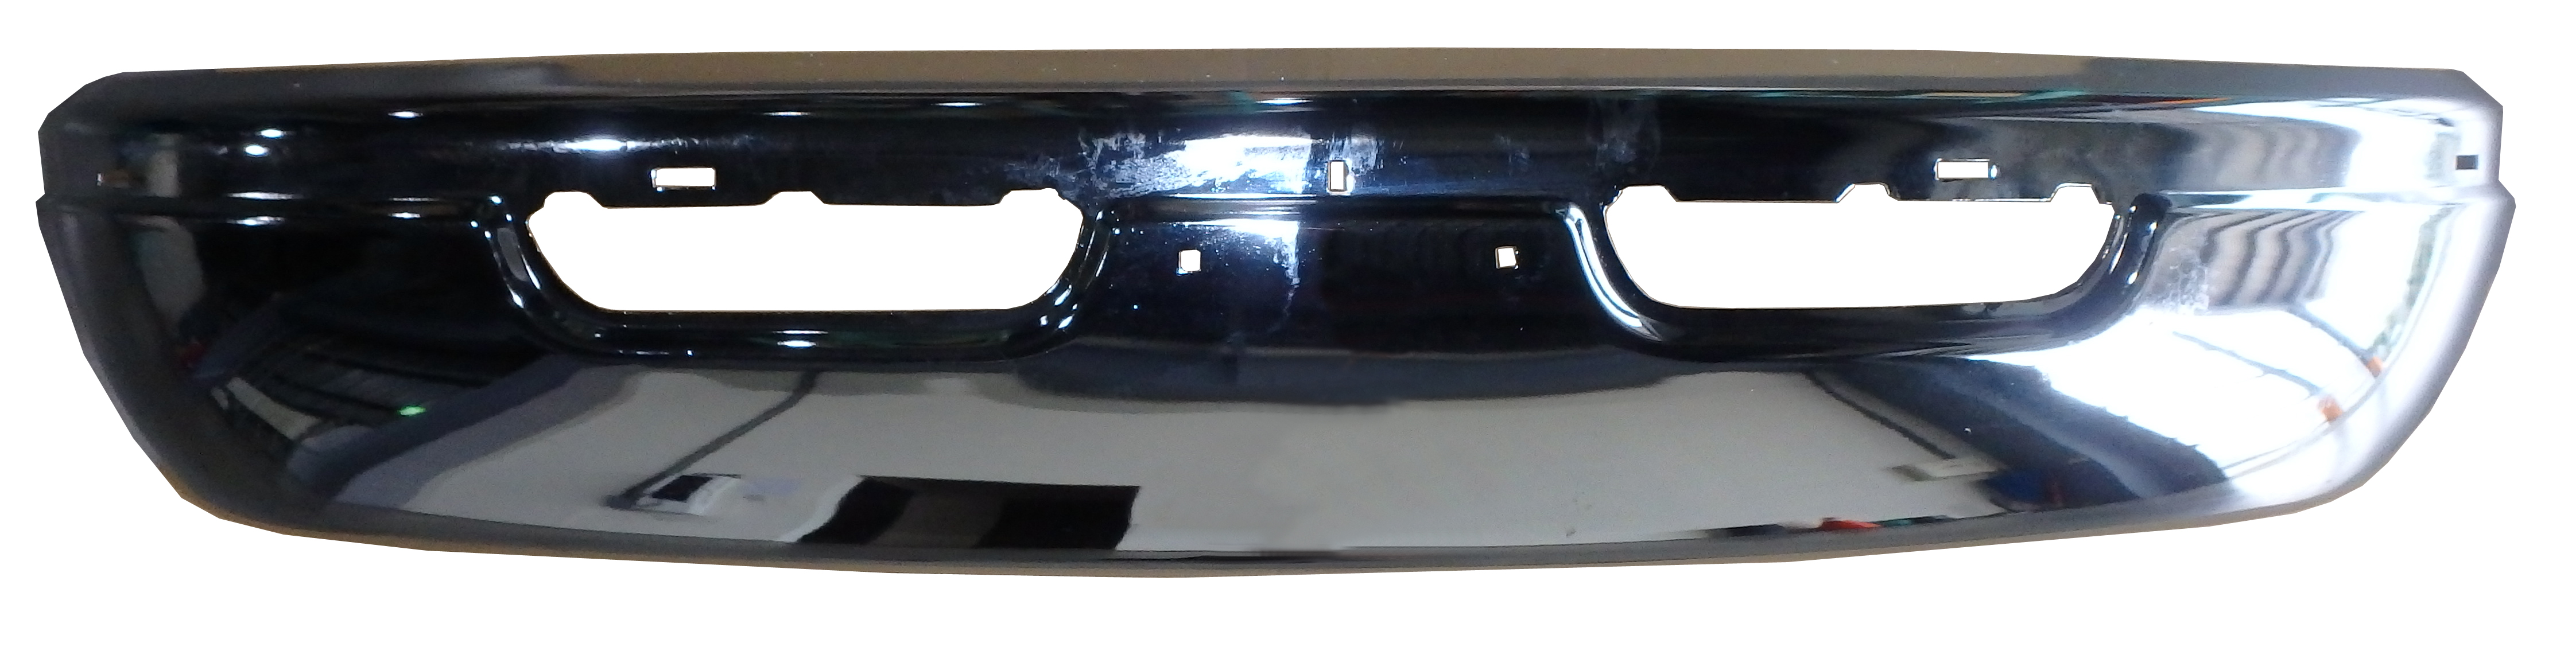 Aftermarket METAL FRONT BUMPERS for DODGE - RAM 1500 VAN, RAM 1500 VAN,00-03,Front bumper face bar